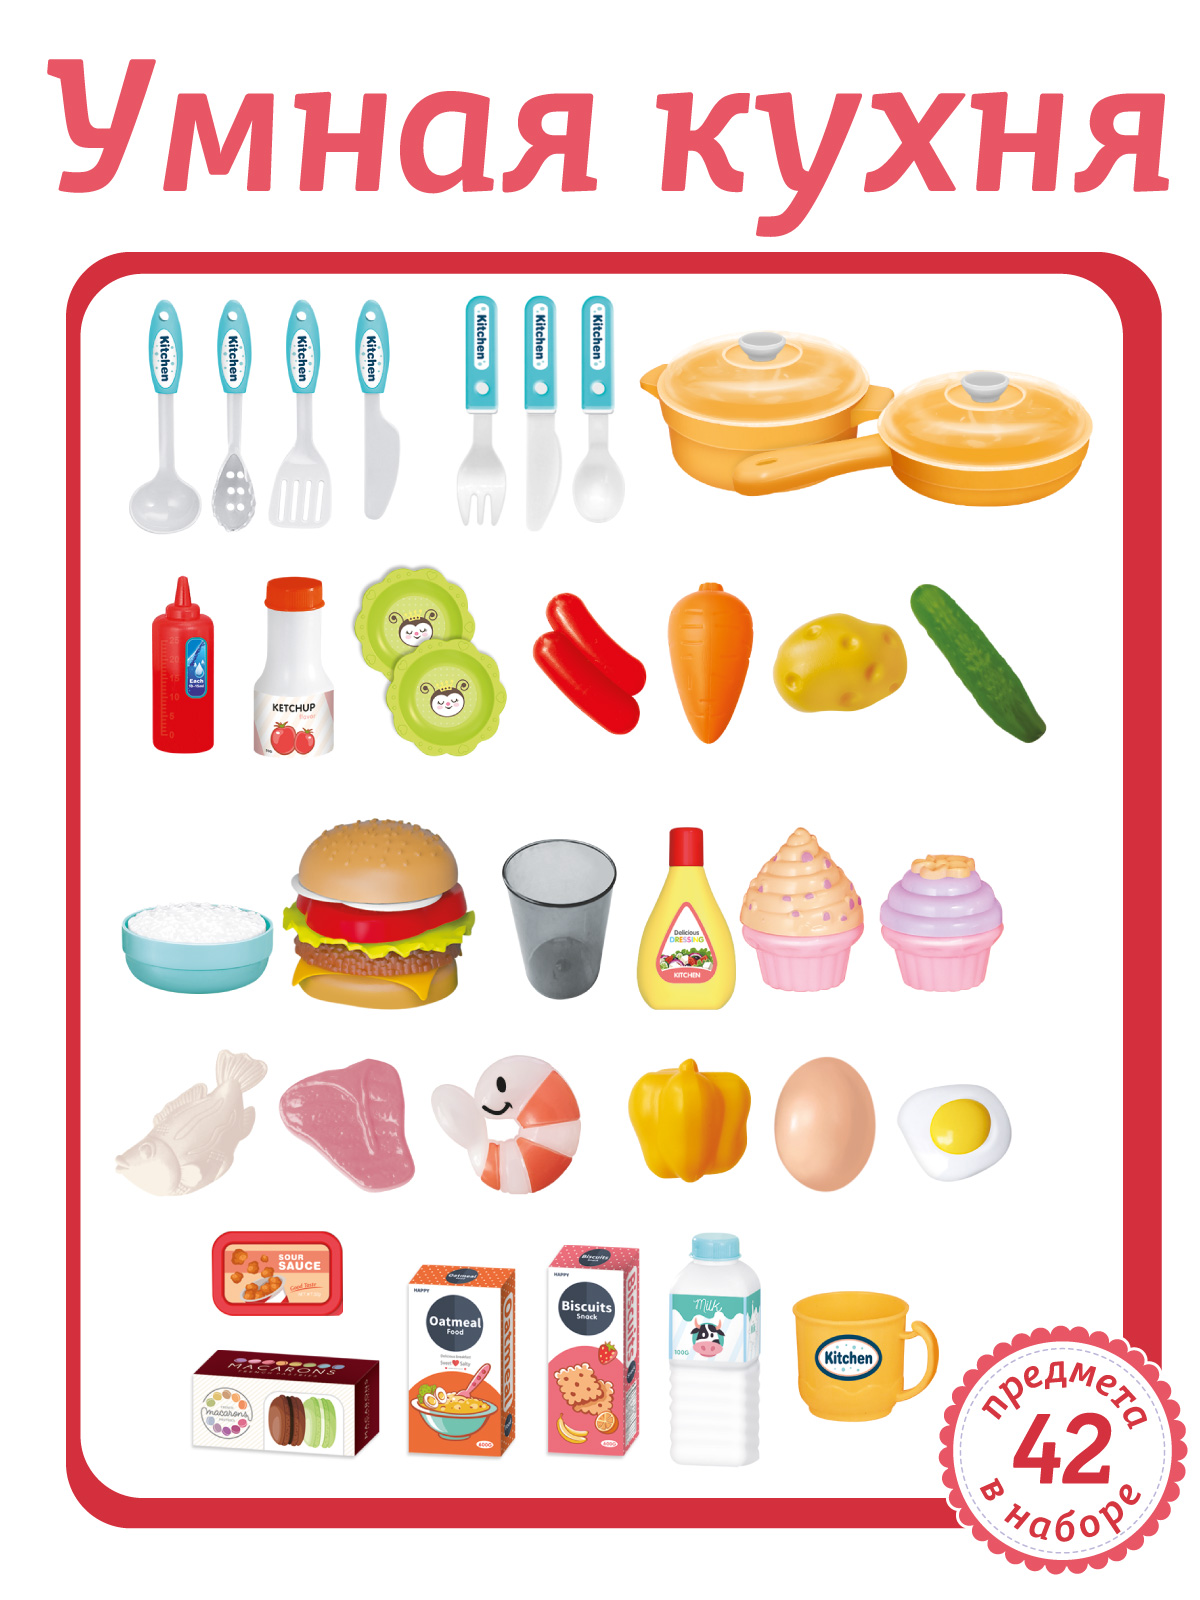 Игровой набор детский AMORE BELLO Умная Кухня с пультом с паром и кран с водой игрушечные продукты и посуда JB0209161 - фото 6